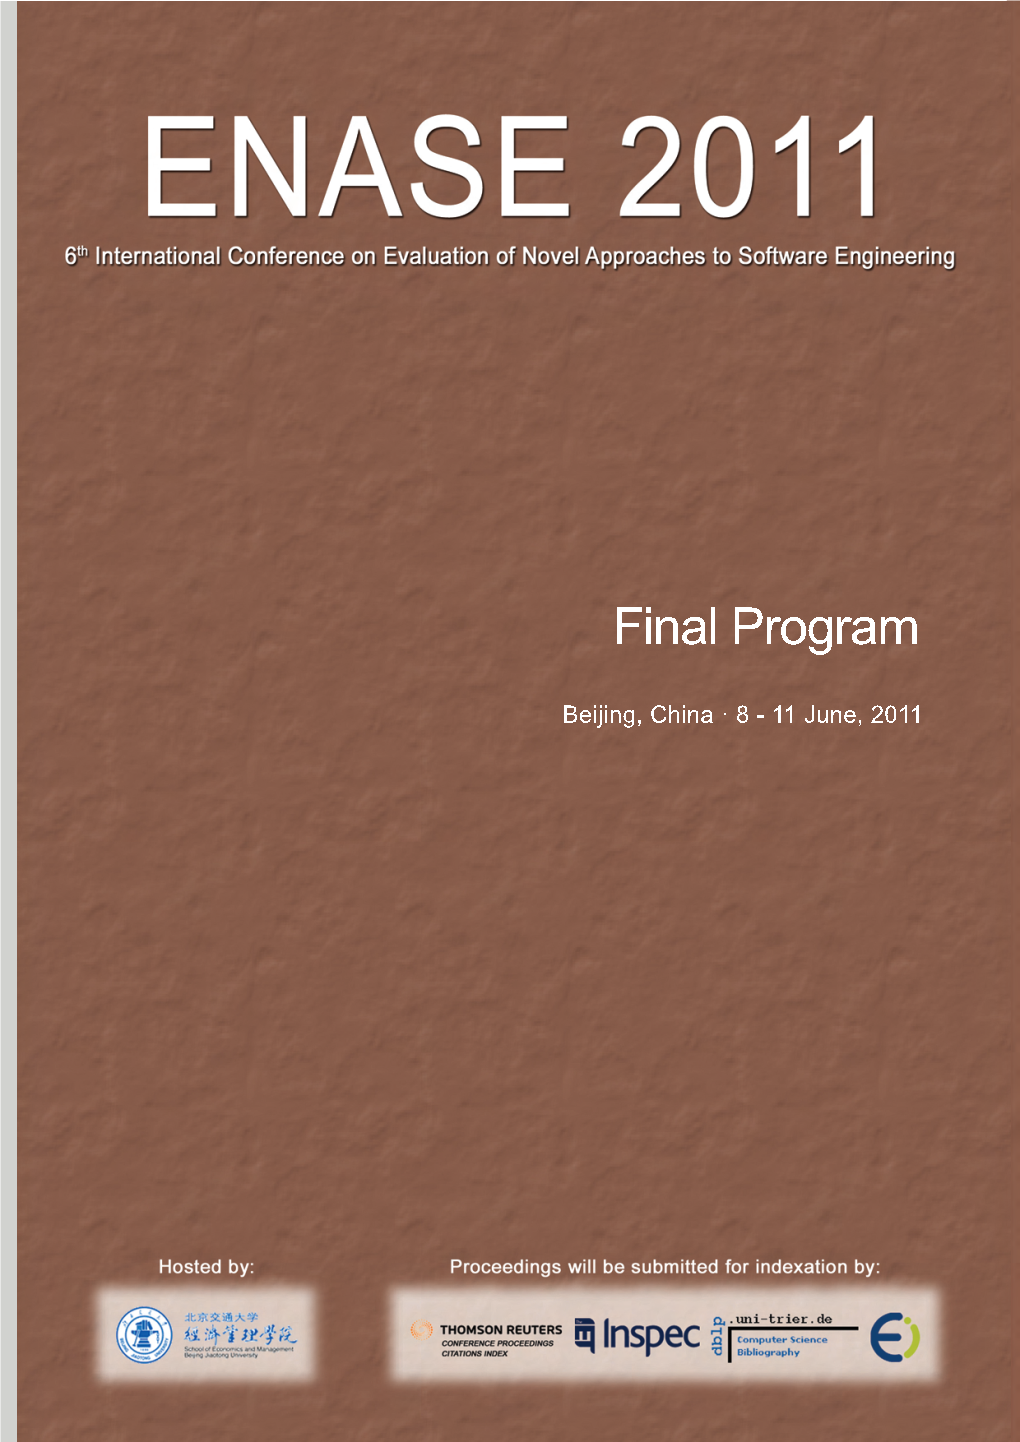 ENASE 2011 Final Program